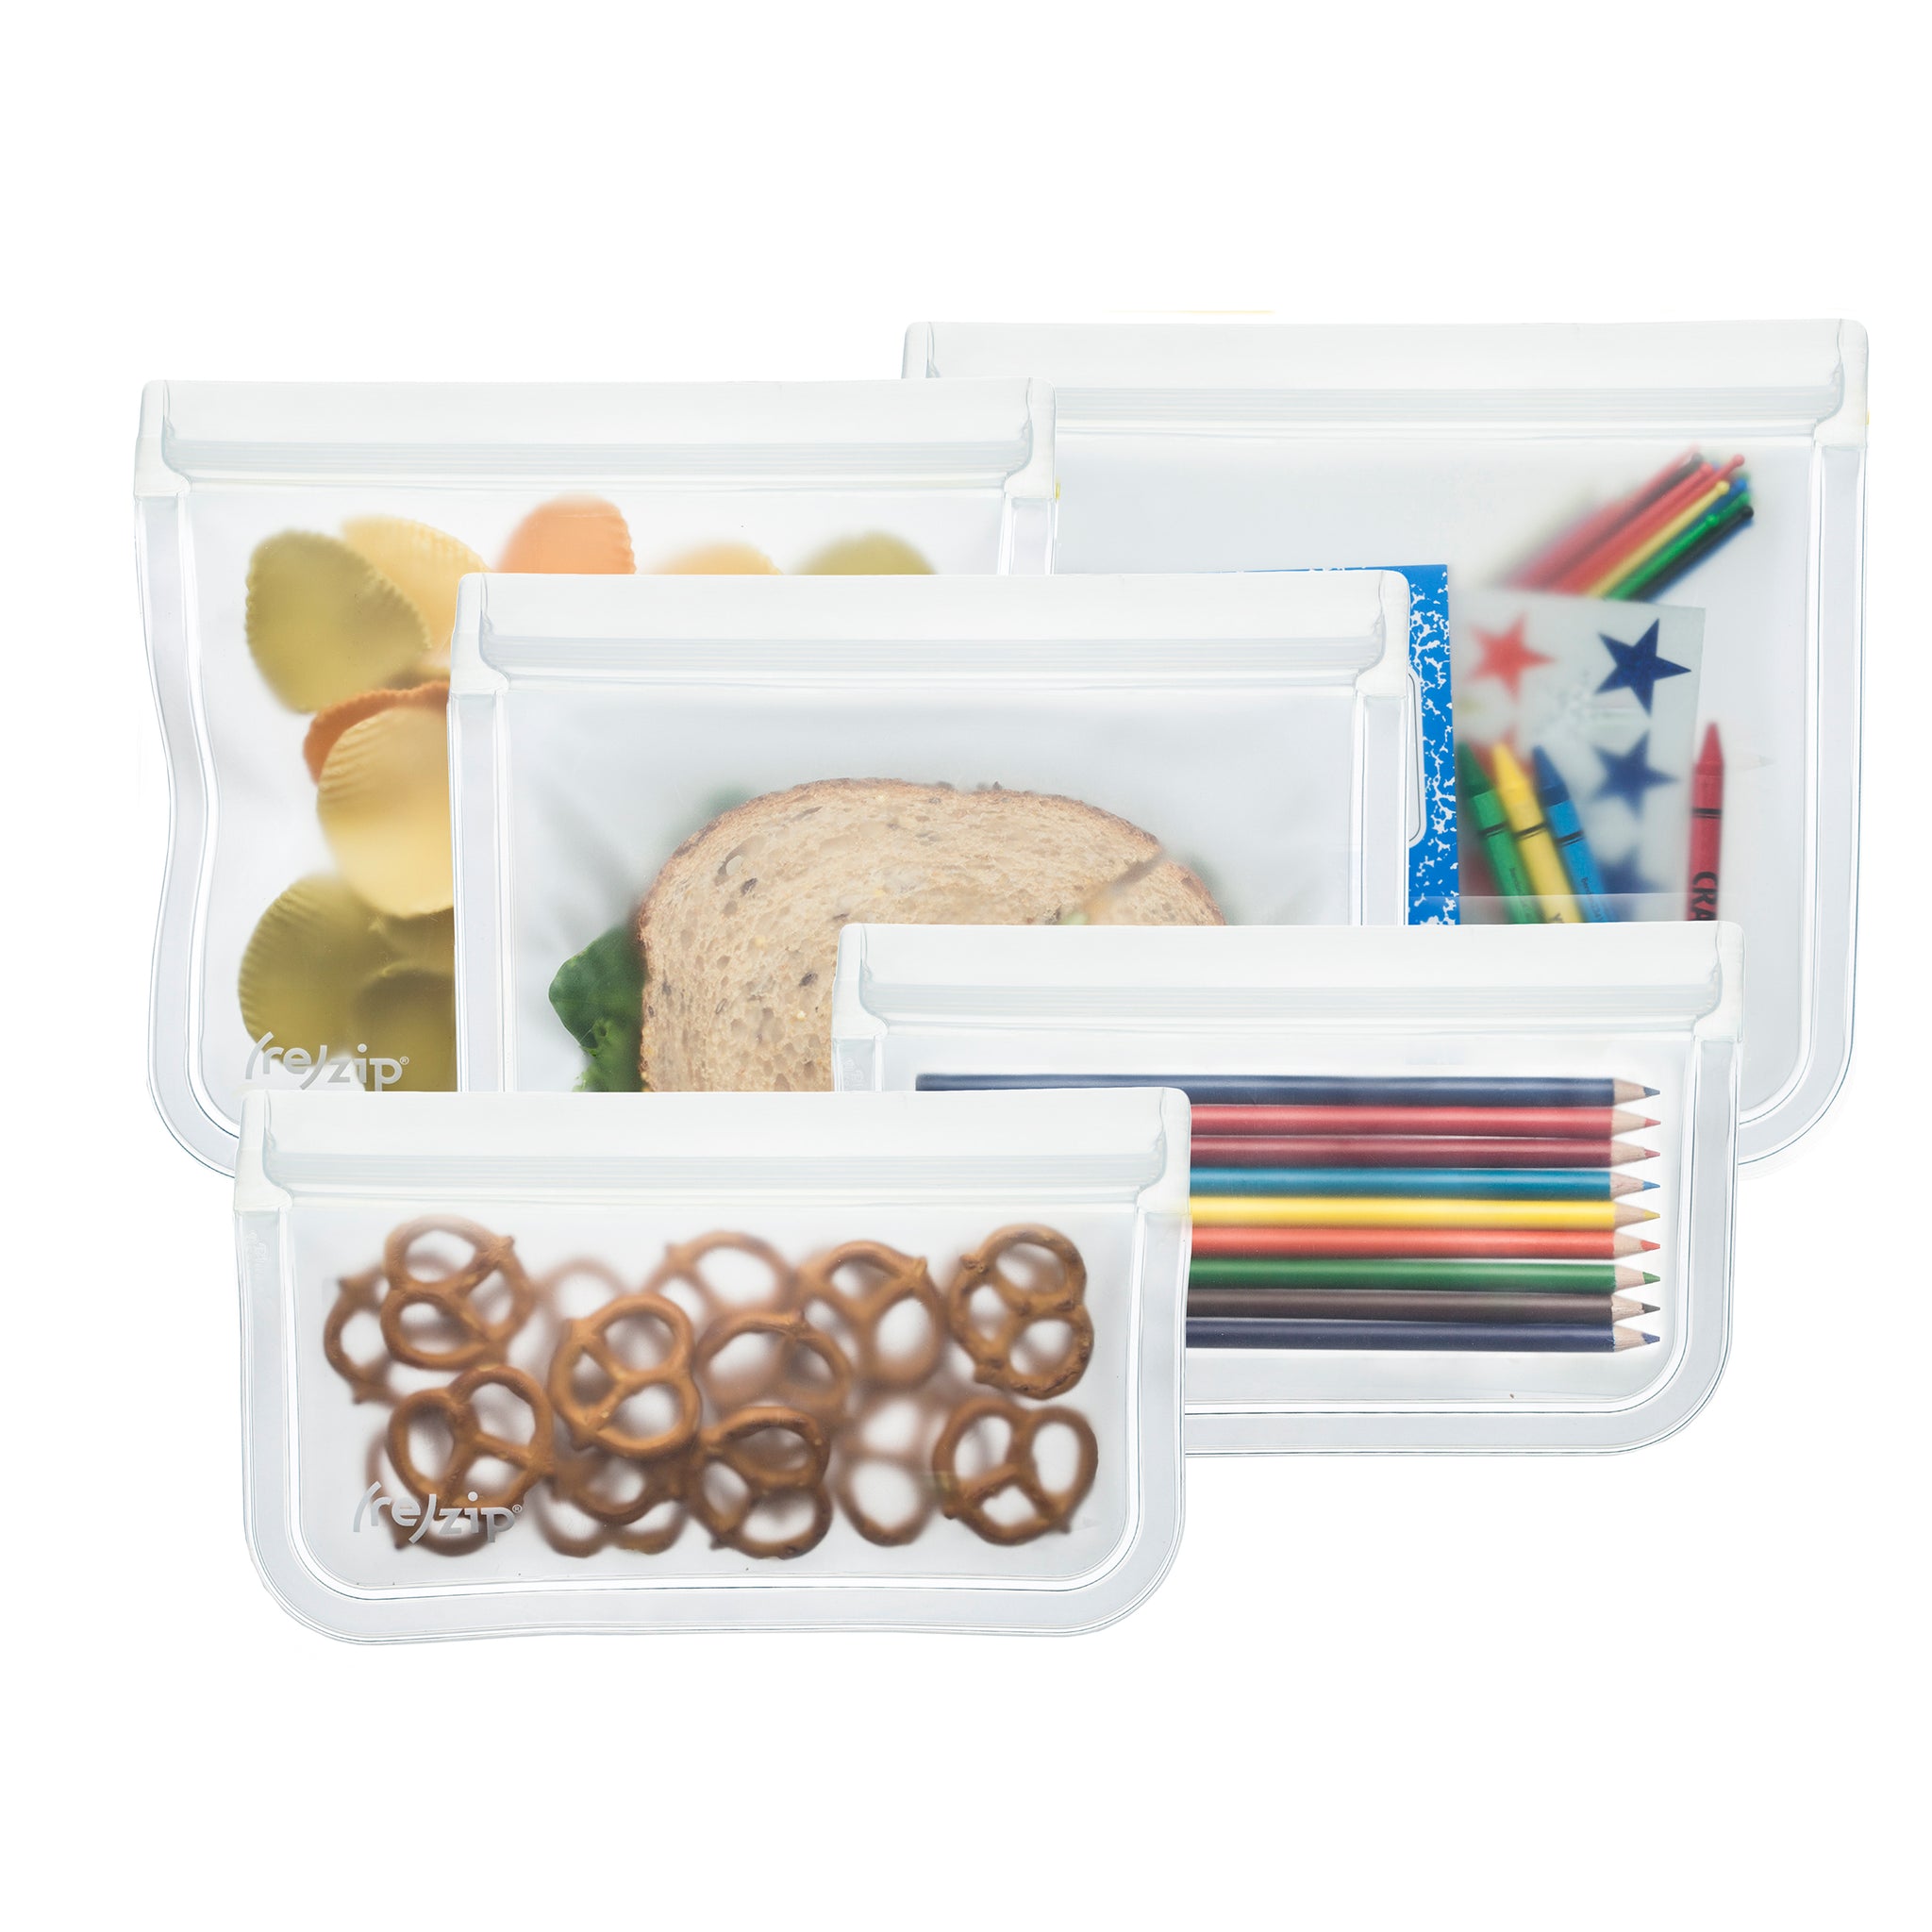 re)zip Reusable Leak-proof Food Storage Flat Bag Kit - Snack